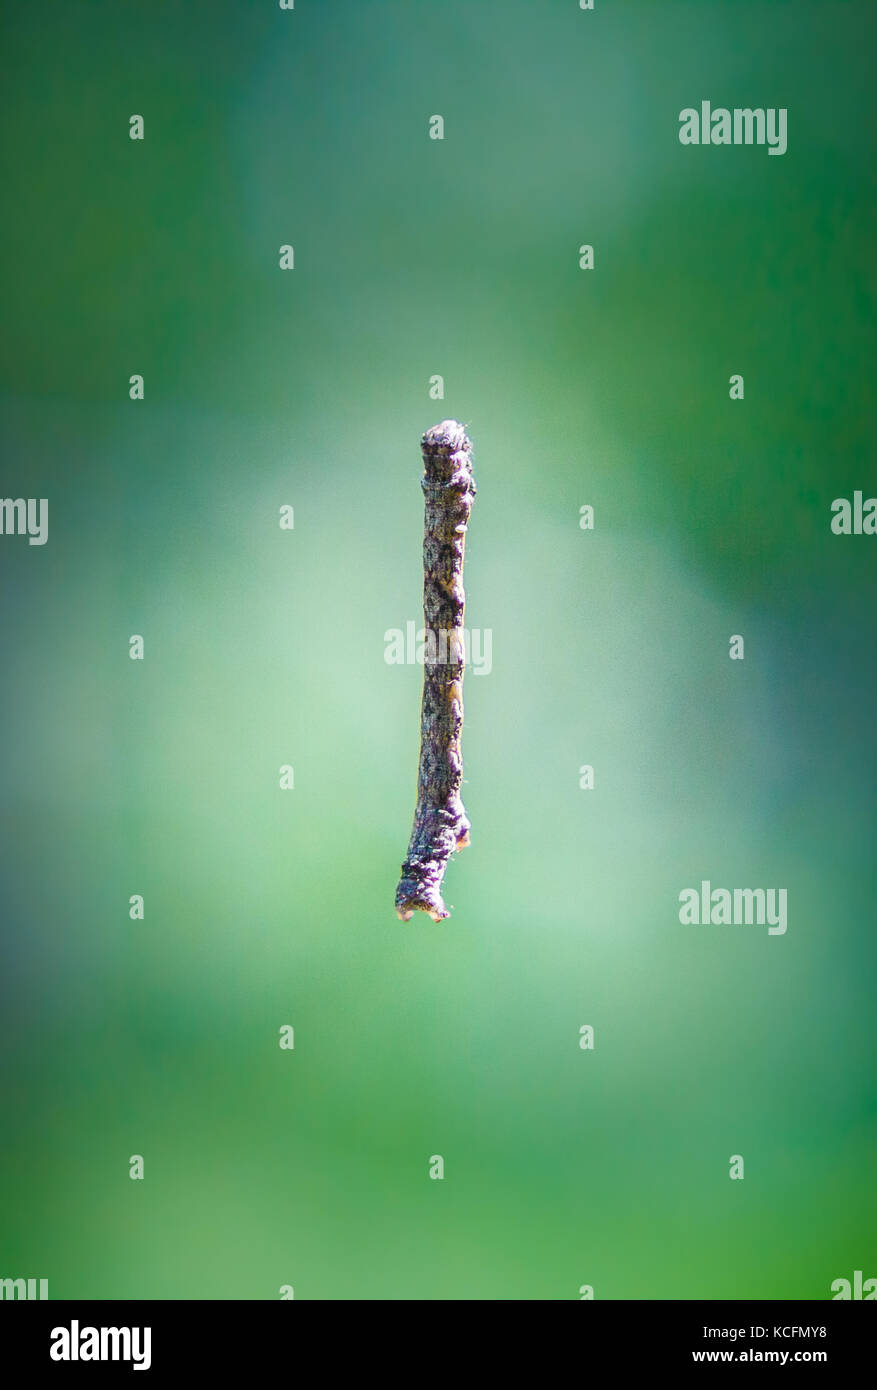 Caterpillar ähnlich Zweig hängend im Web in der Luft (farbige Foto) Stockfoto